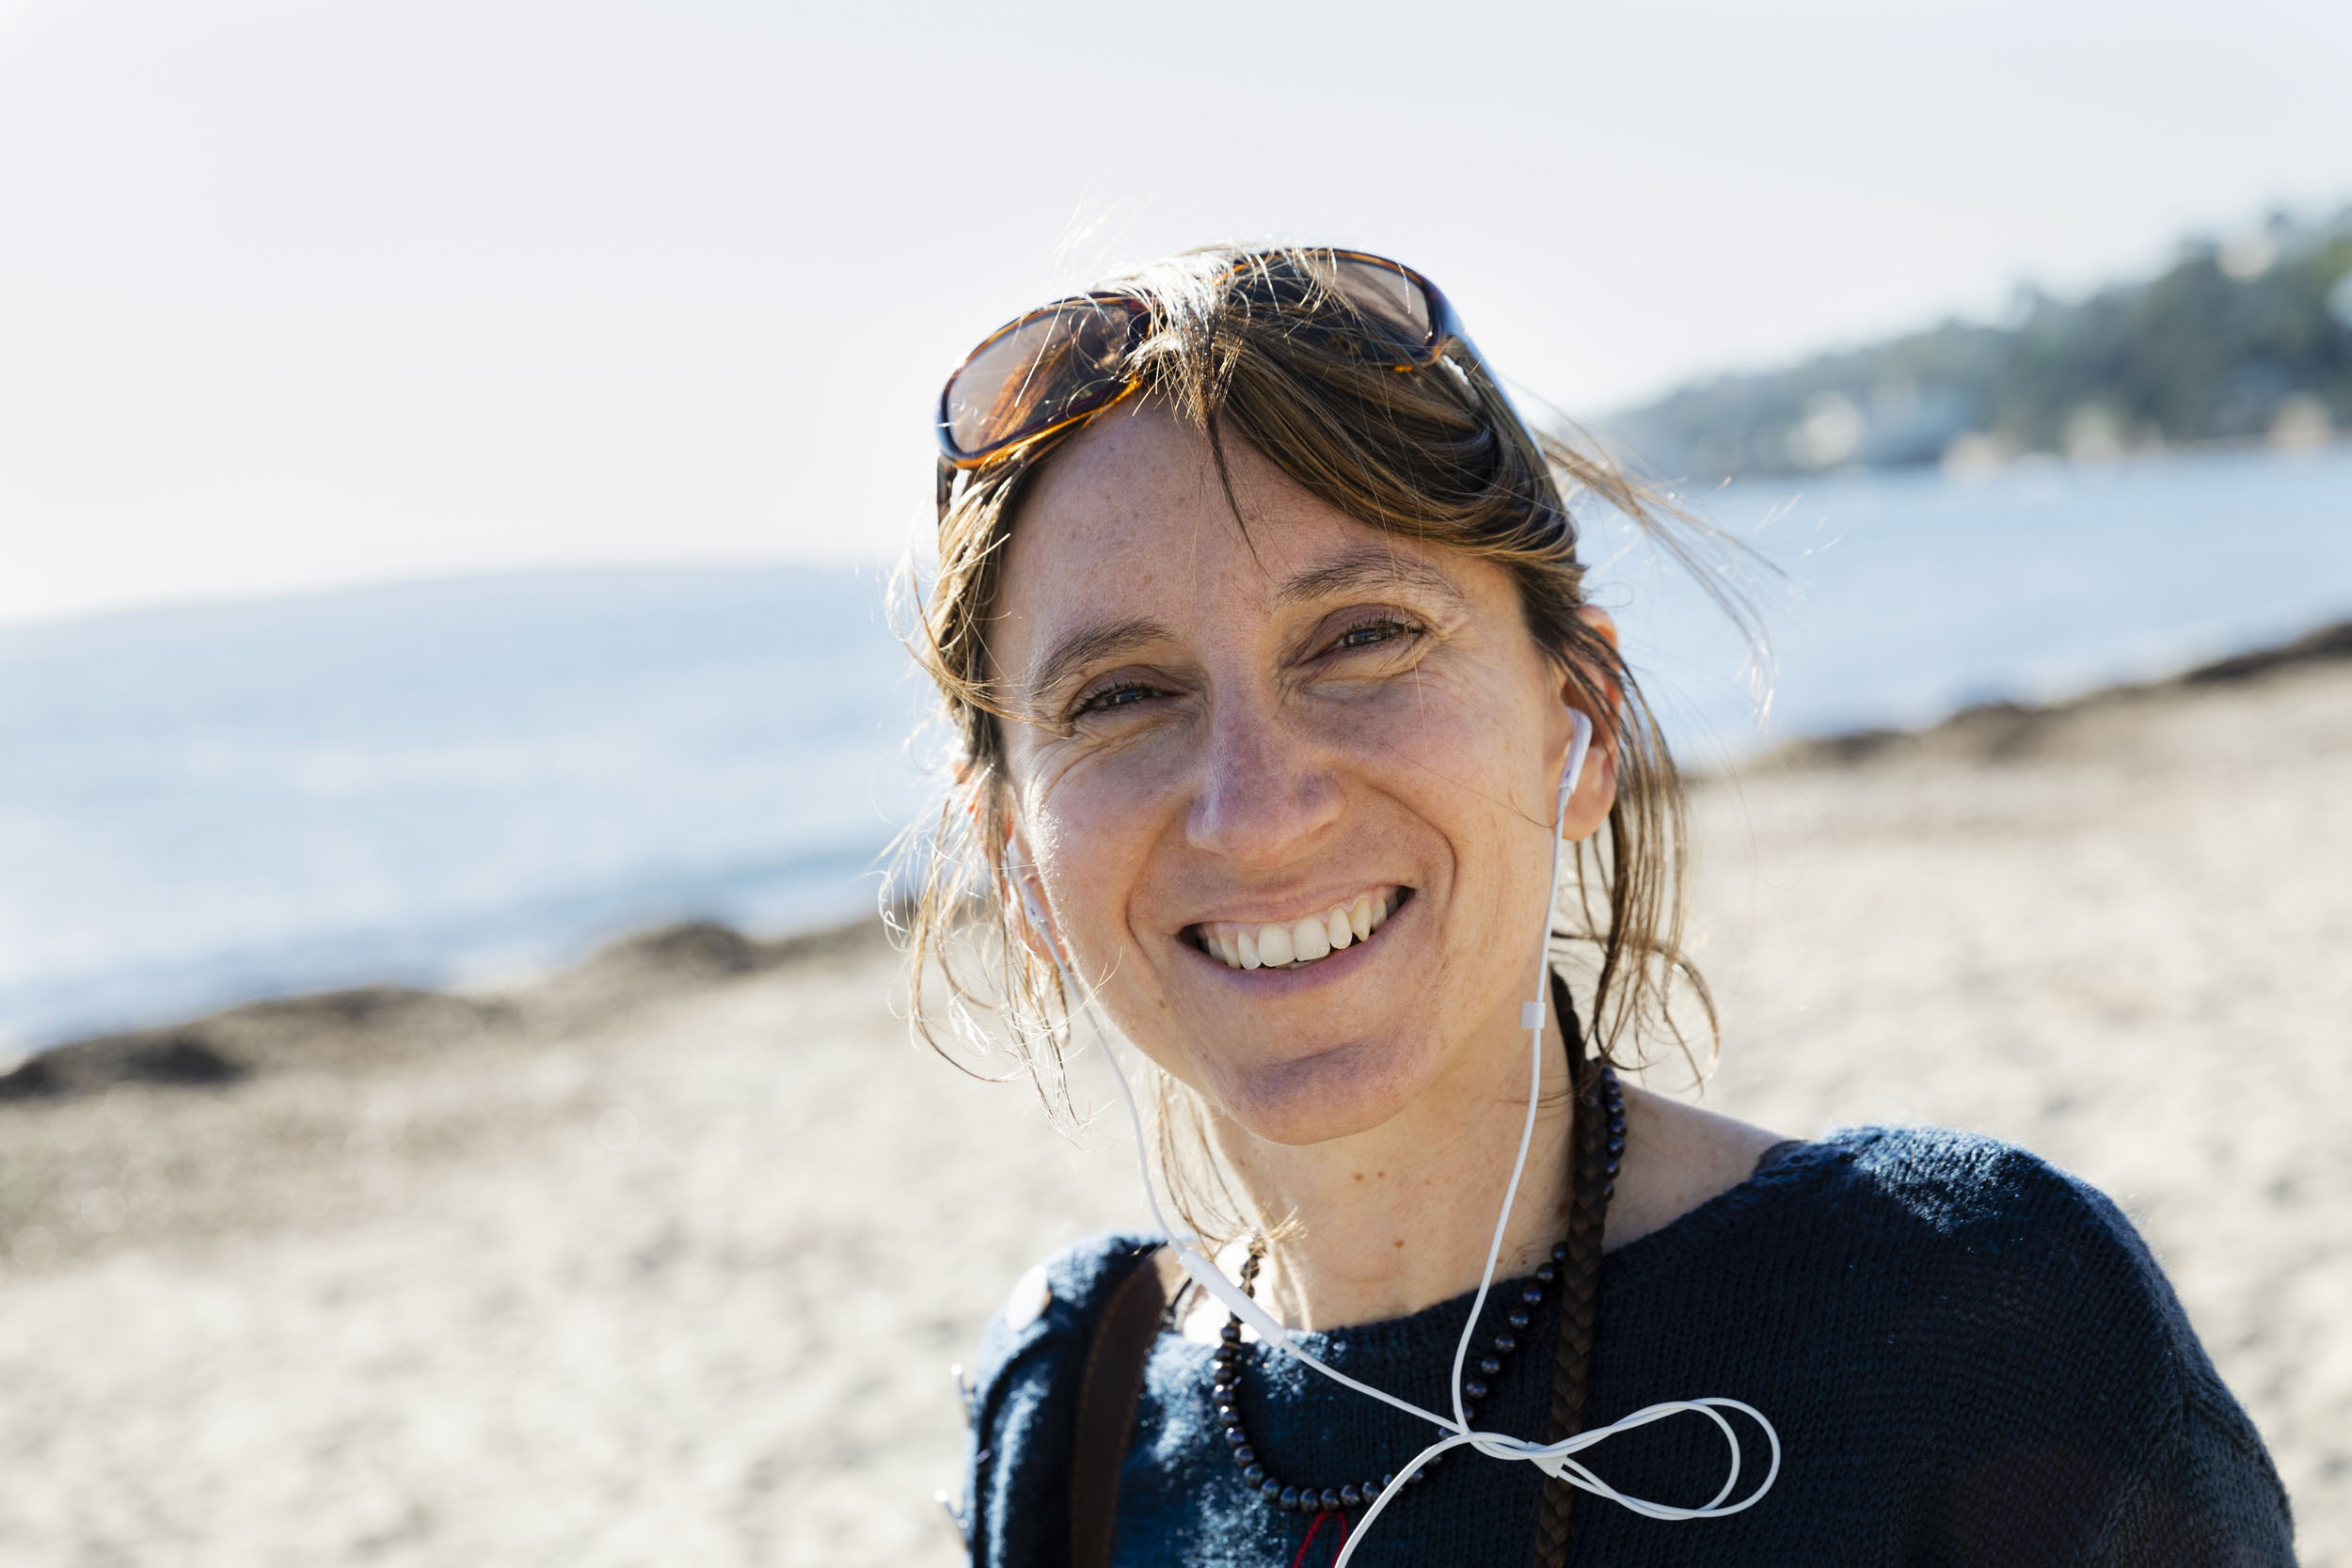 Portrait de vie d'une femme souriante sur une plage en hiver avec ses écouteurs de portable aux oreilles. Photo de portrait réalisée pour la banque d'images Plainpicture.